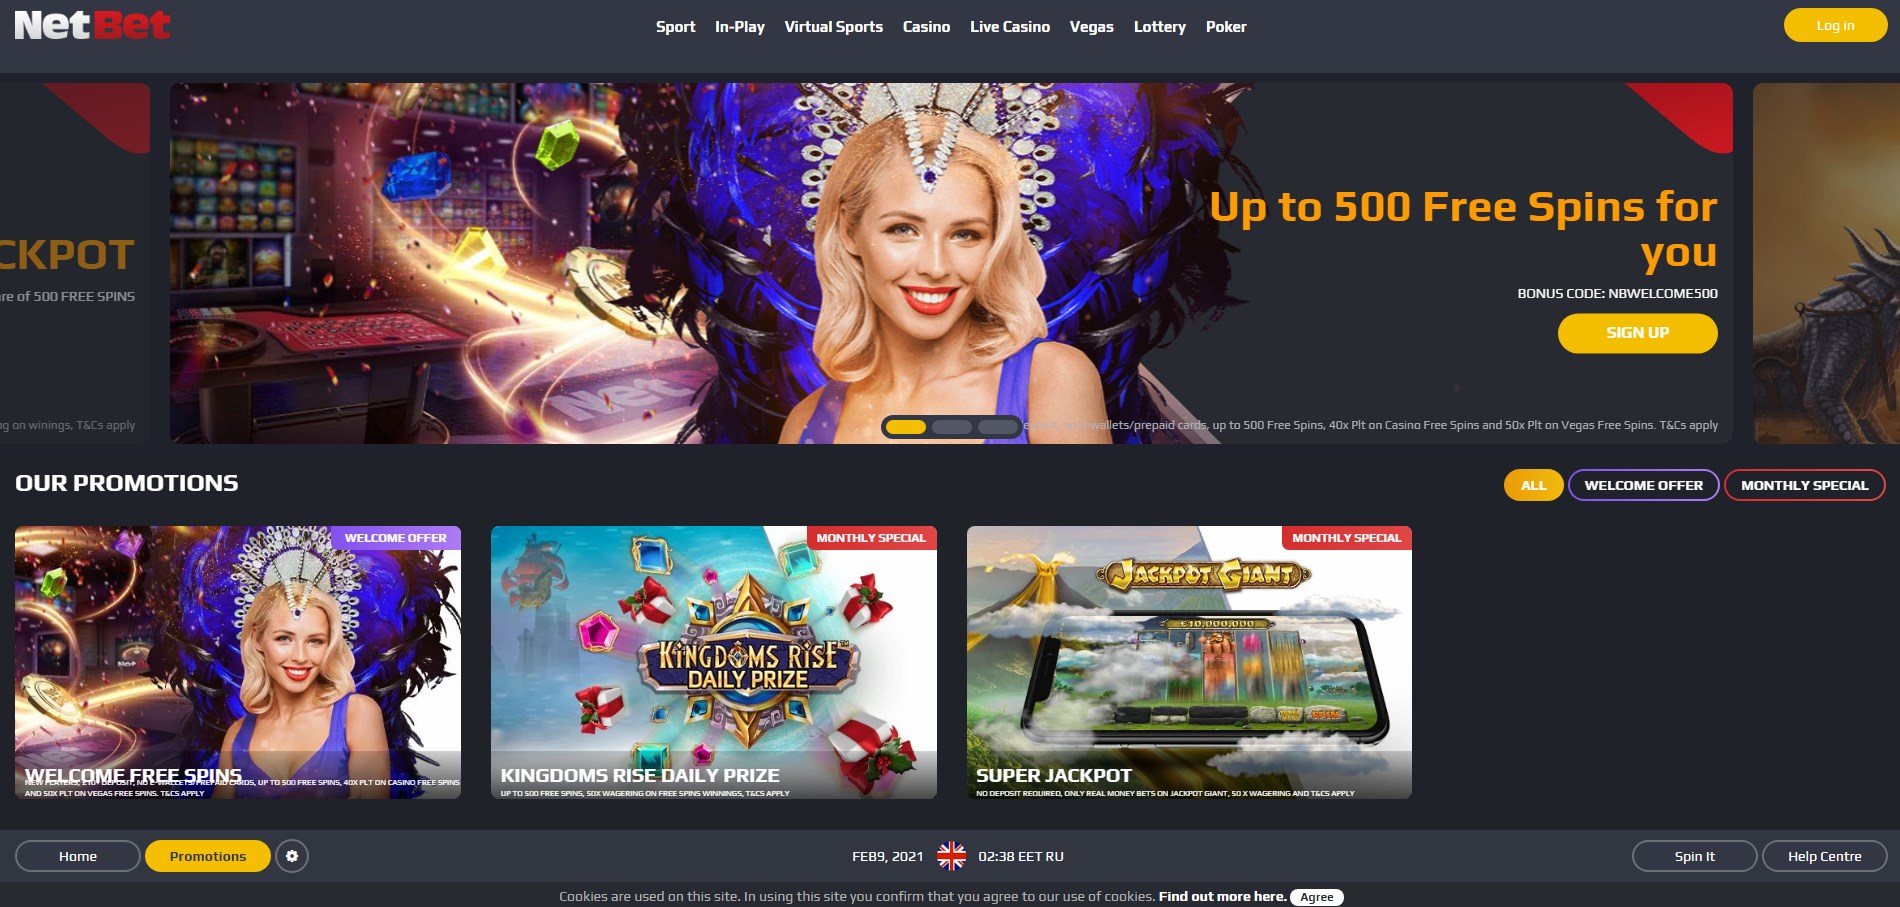 NetBet Vegas Casino UK No Deposit Bonus